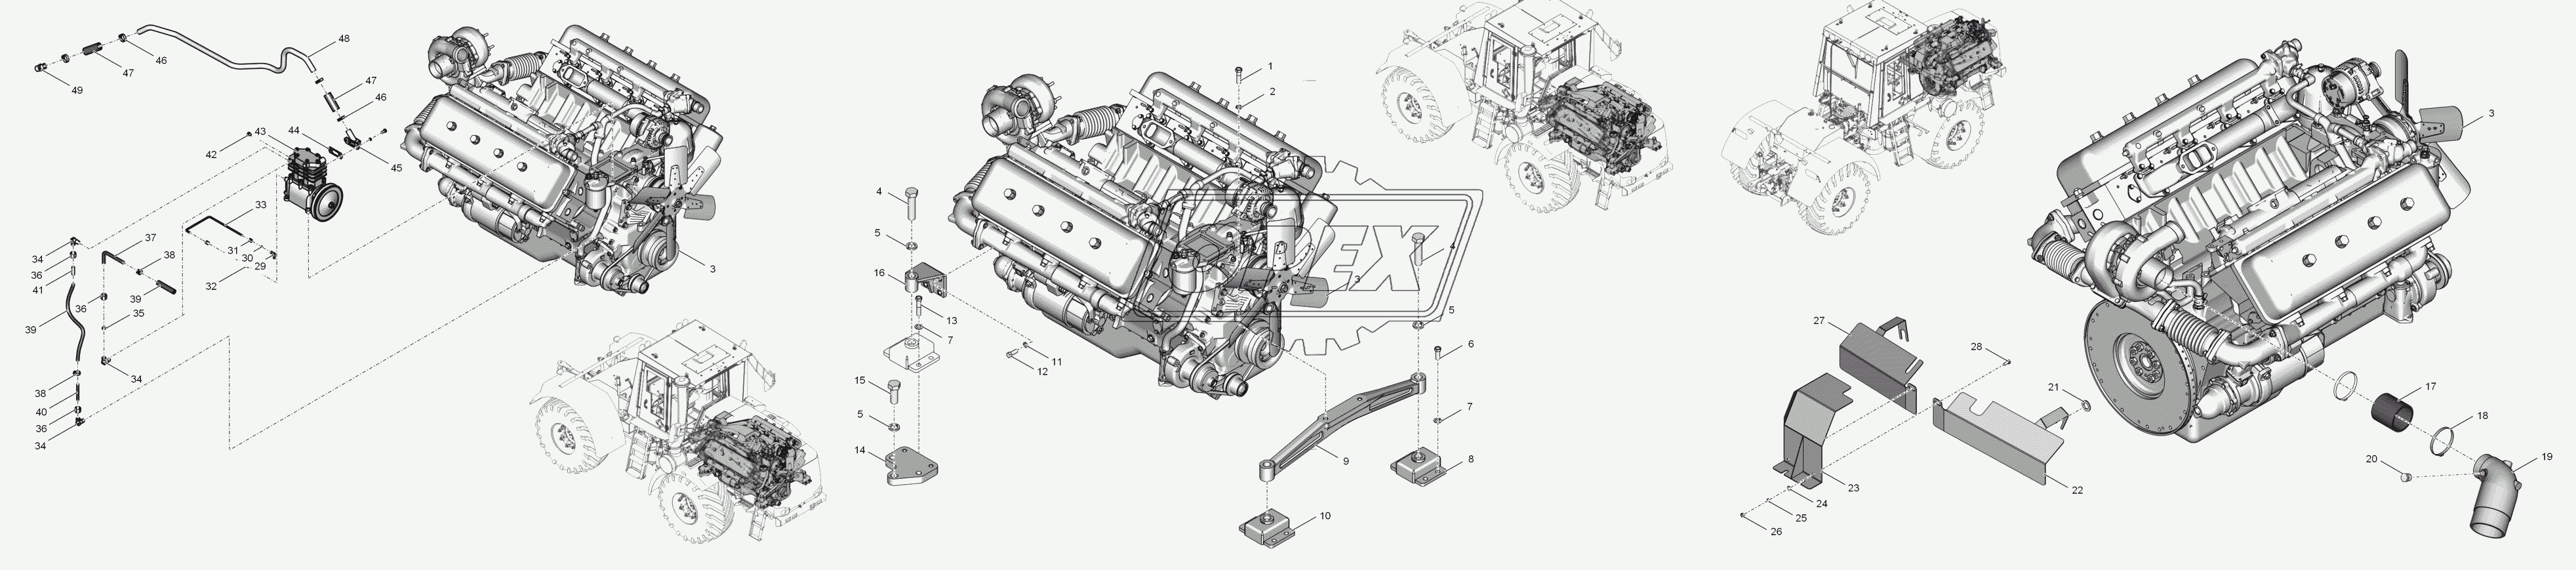 744Р1-1000000-2 Двигатель в сборе